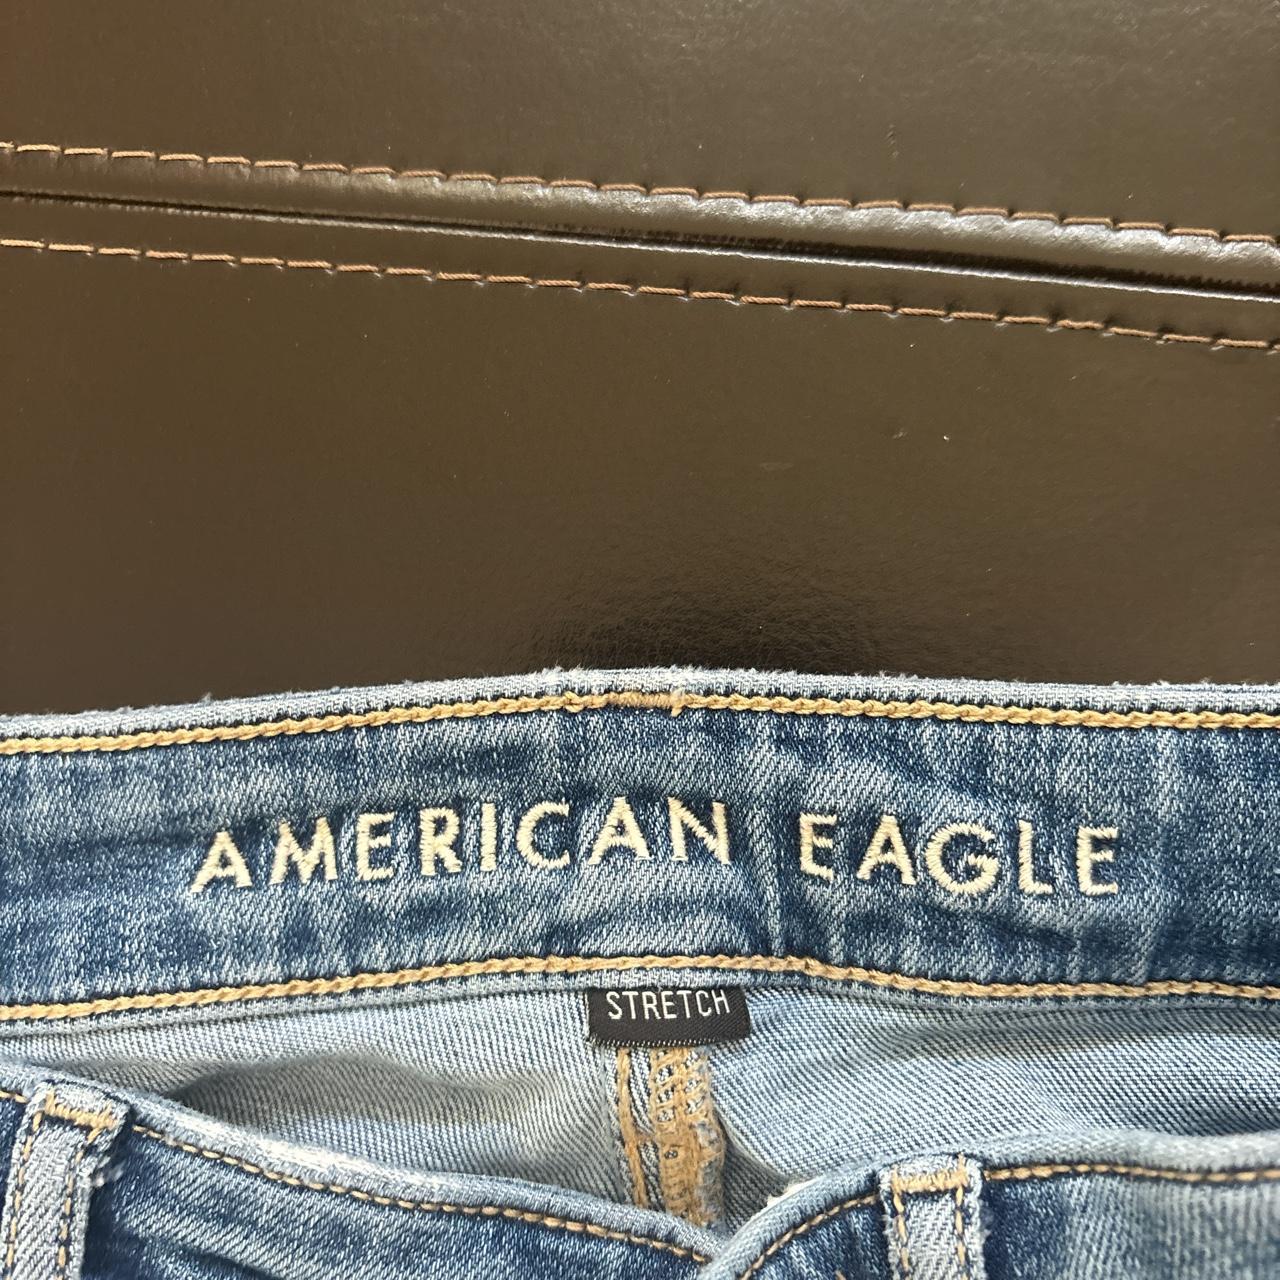 american eagle flare jeans never worn super - Depop